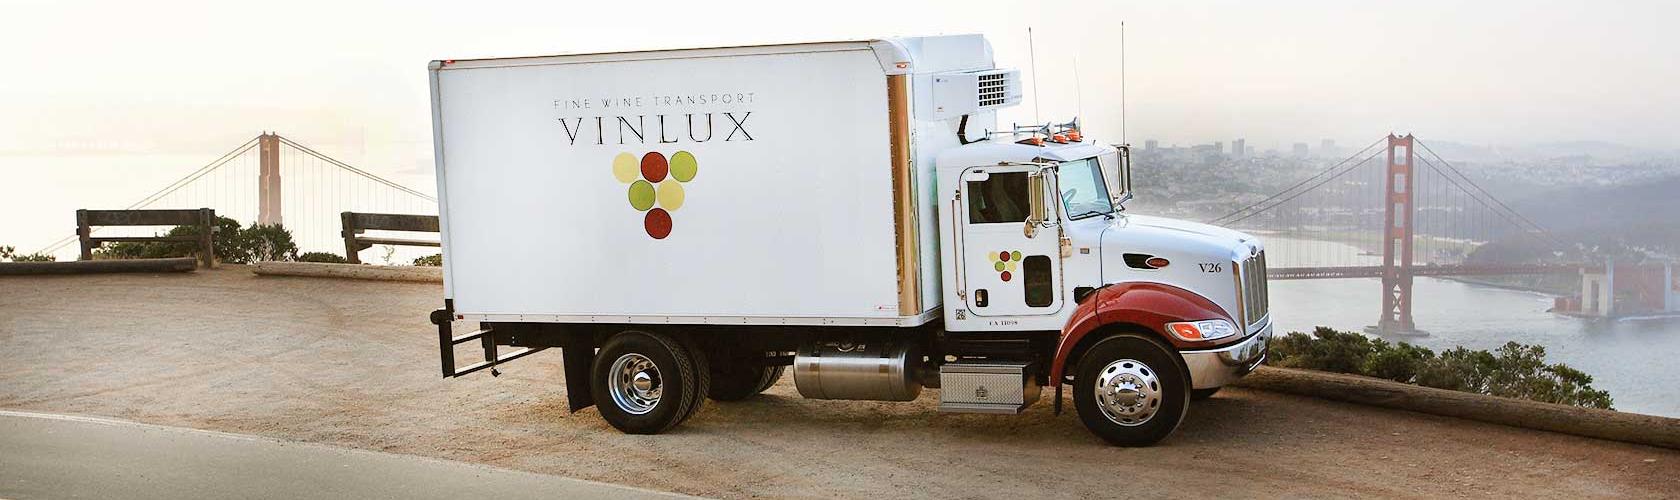 Vinlux truck